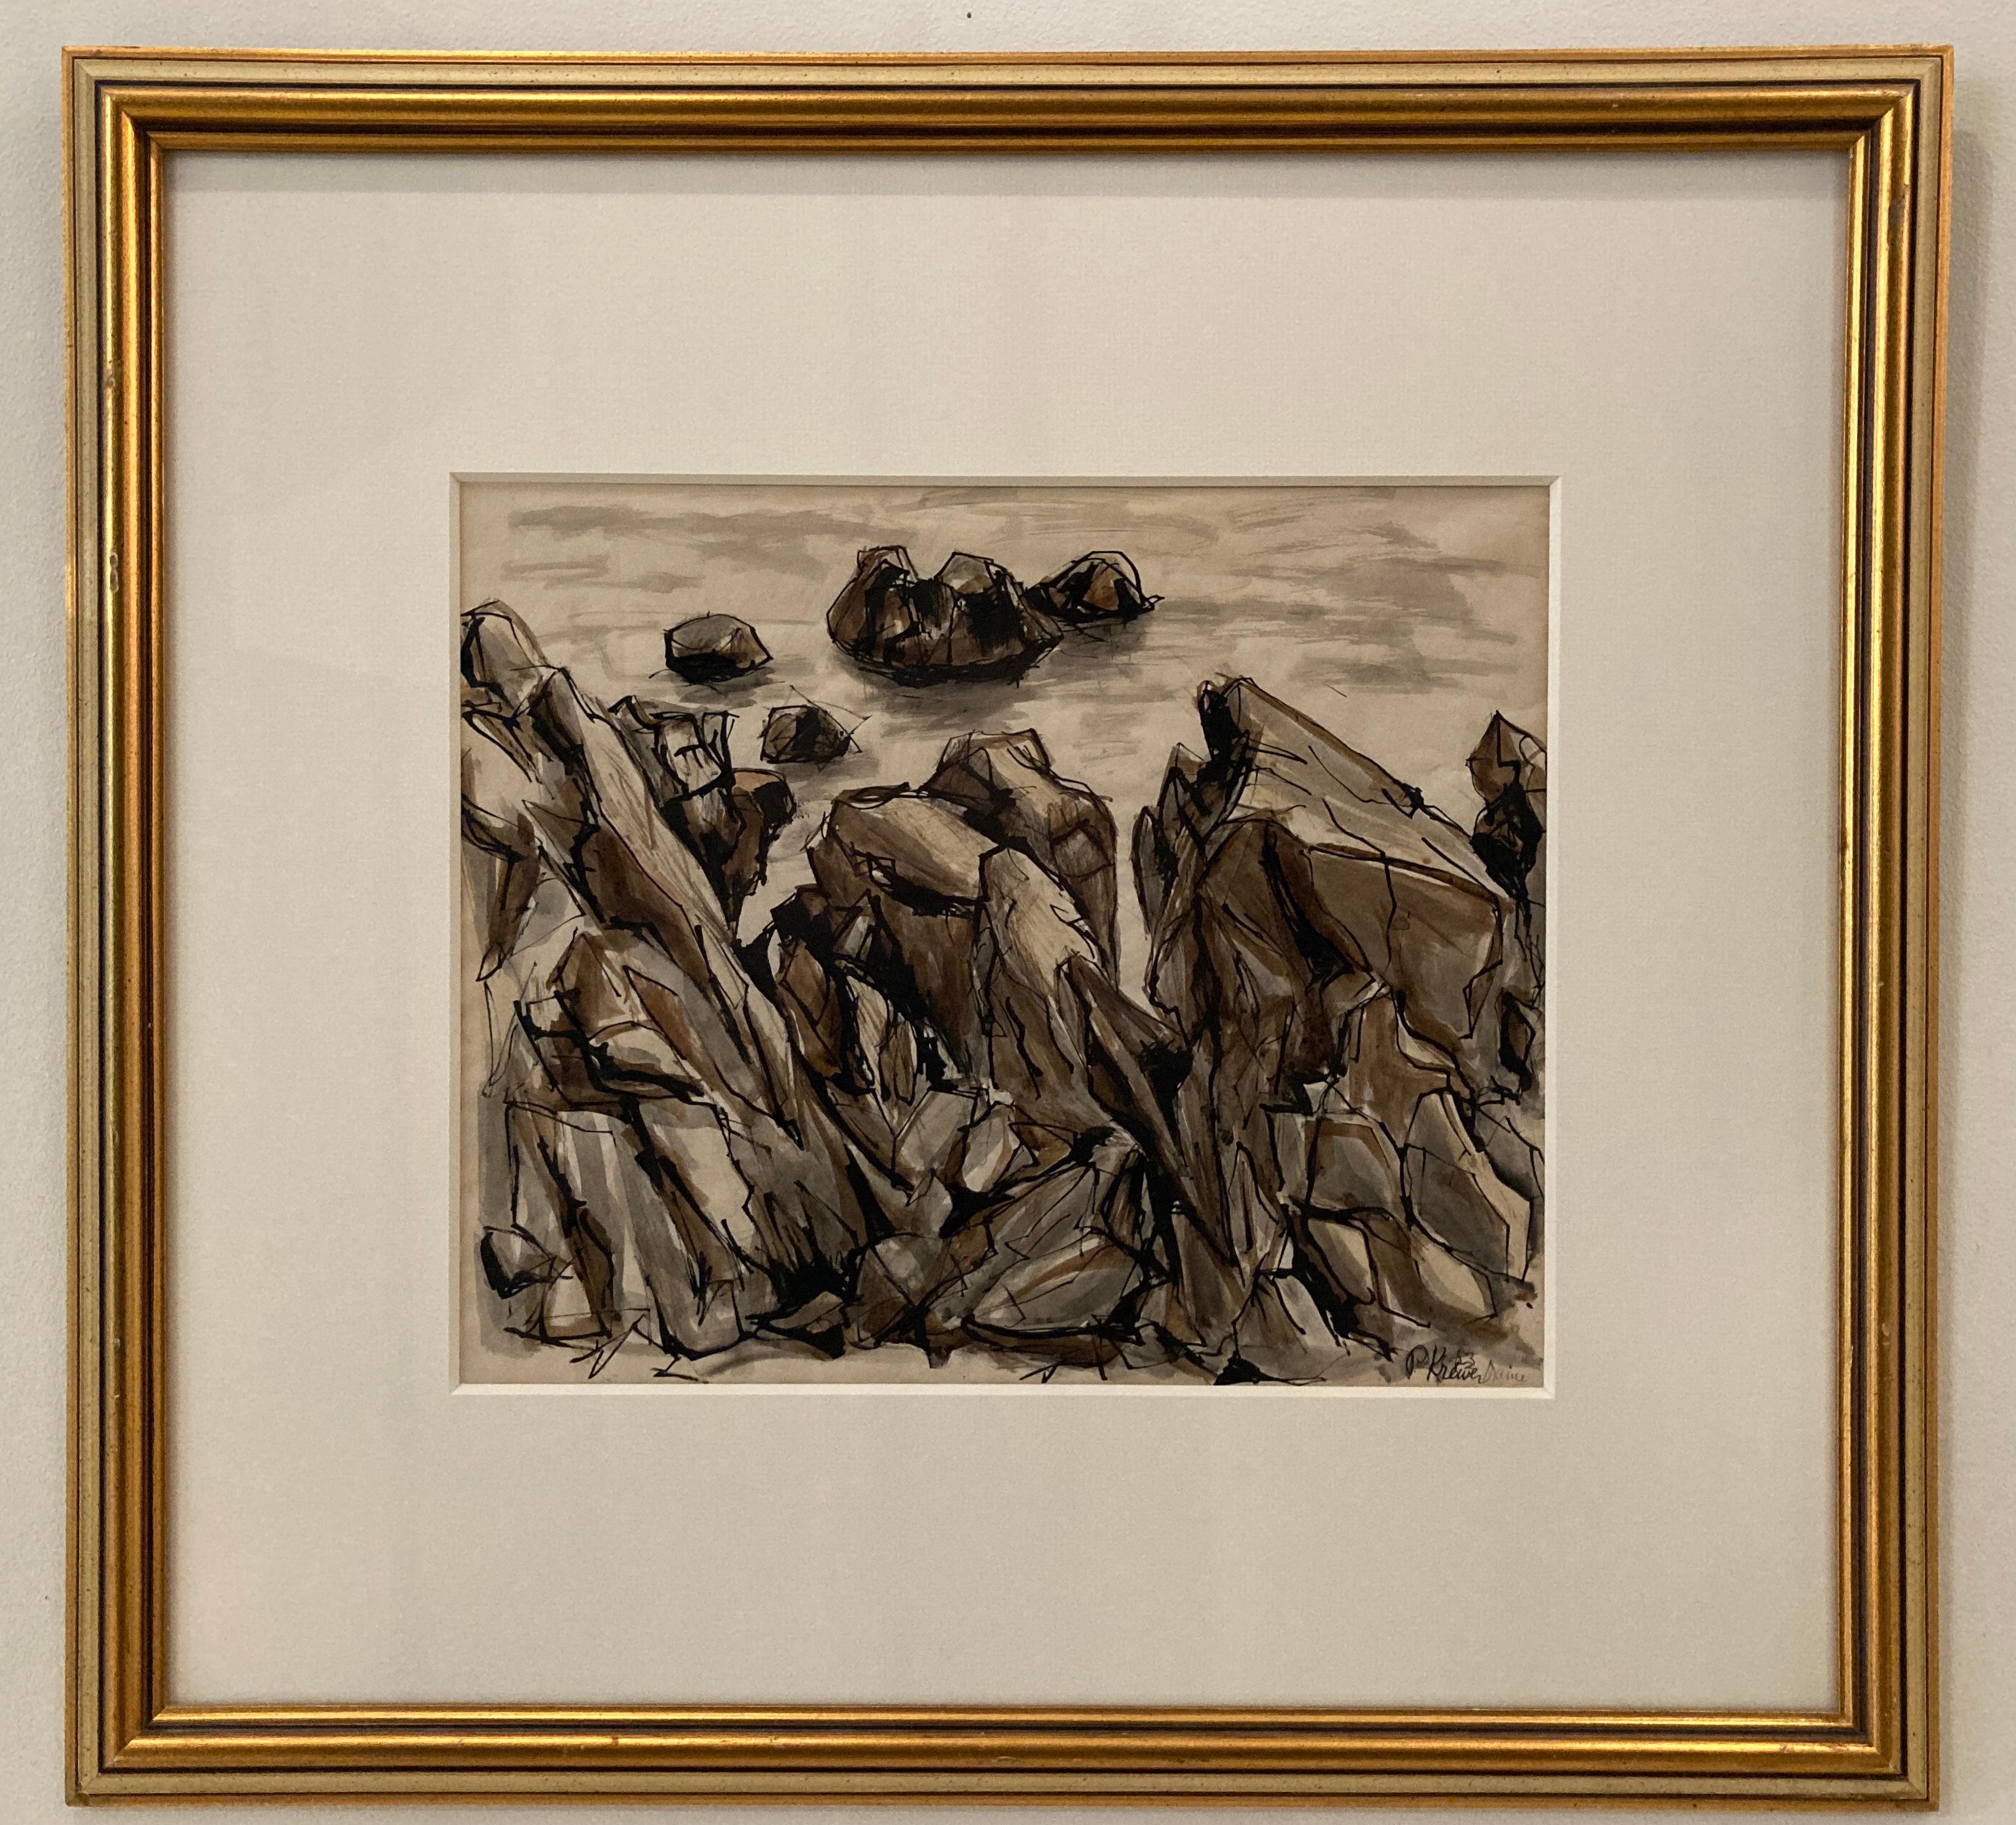 Cette aquarelle encadrée de 26,5 x 16,25 pouces de l'artiste P. Krewer représente un paysage côtier rocheux du Maine. Au premier plan, on aperçoit plusieurs amas de rochers sur le bord de la côte, en plusieurs nuances de gris, de brun et de noir. À